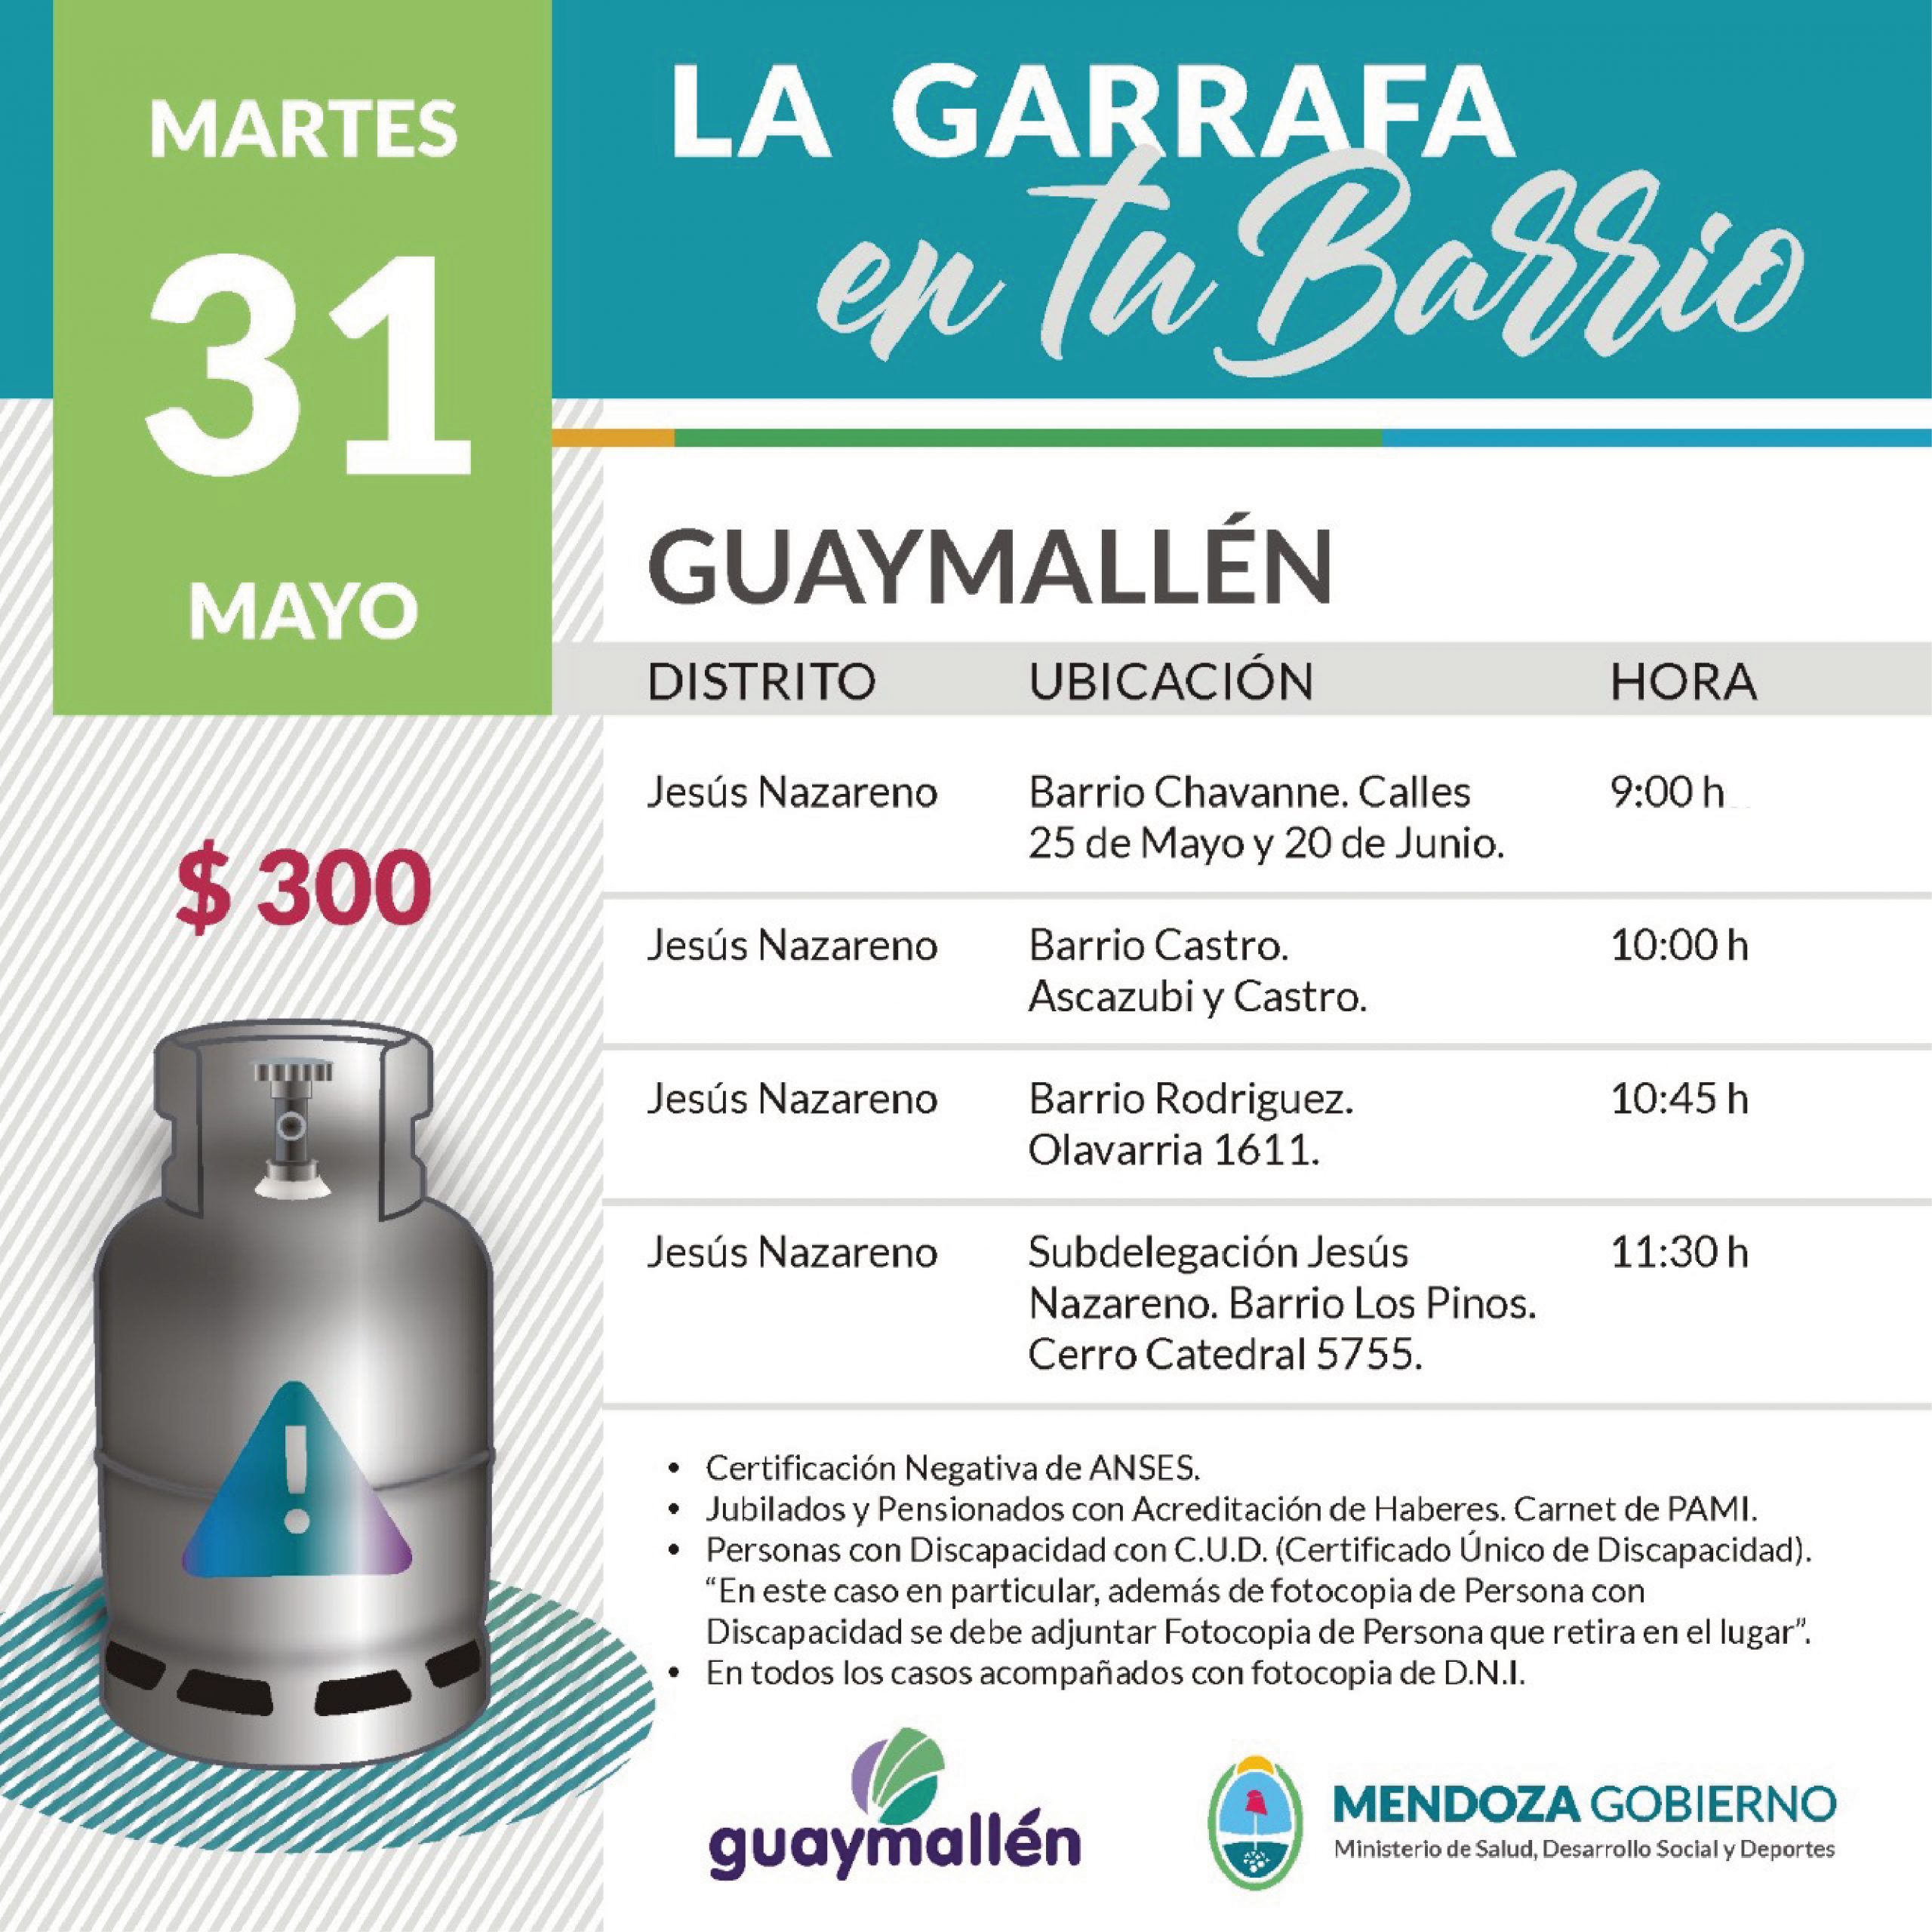 La Garrafa en tu Barrio con subsidio provincial. 31 de mayo.